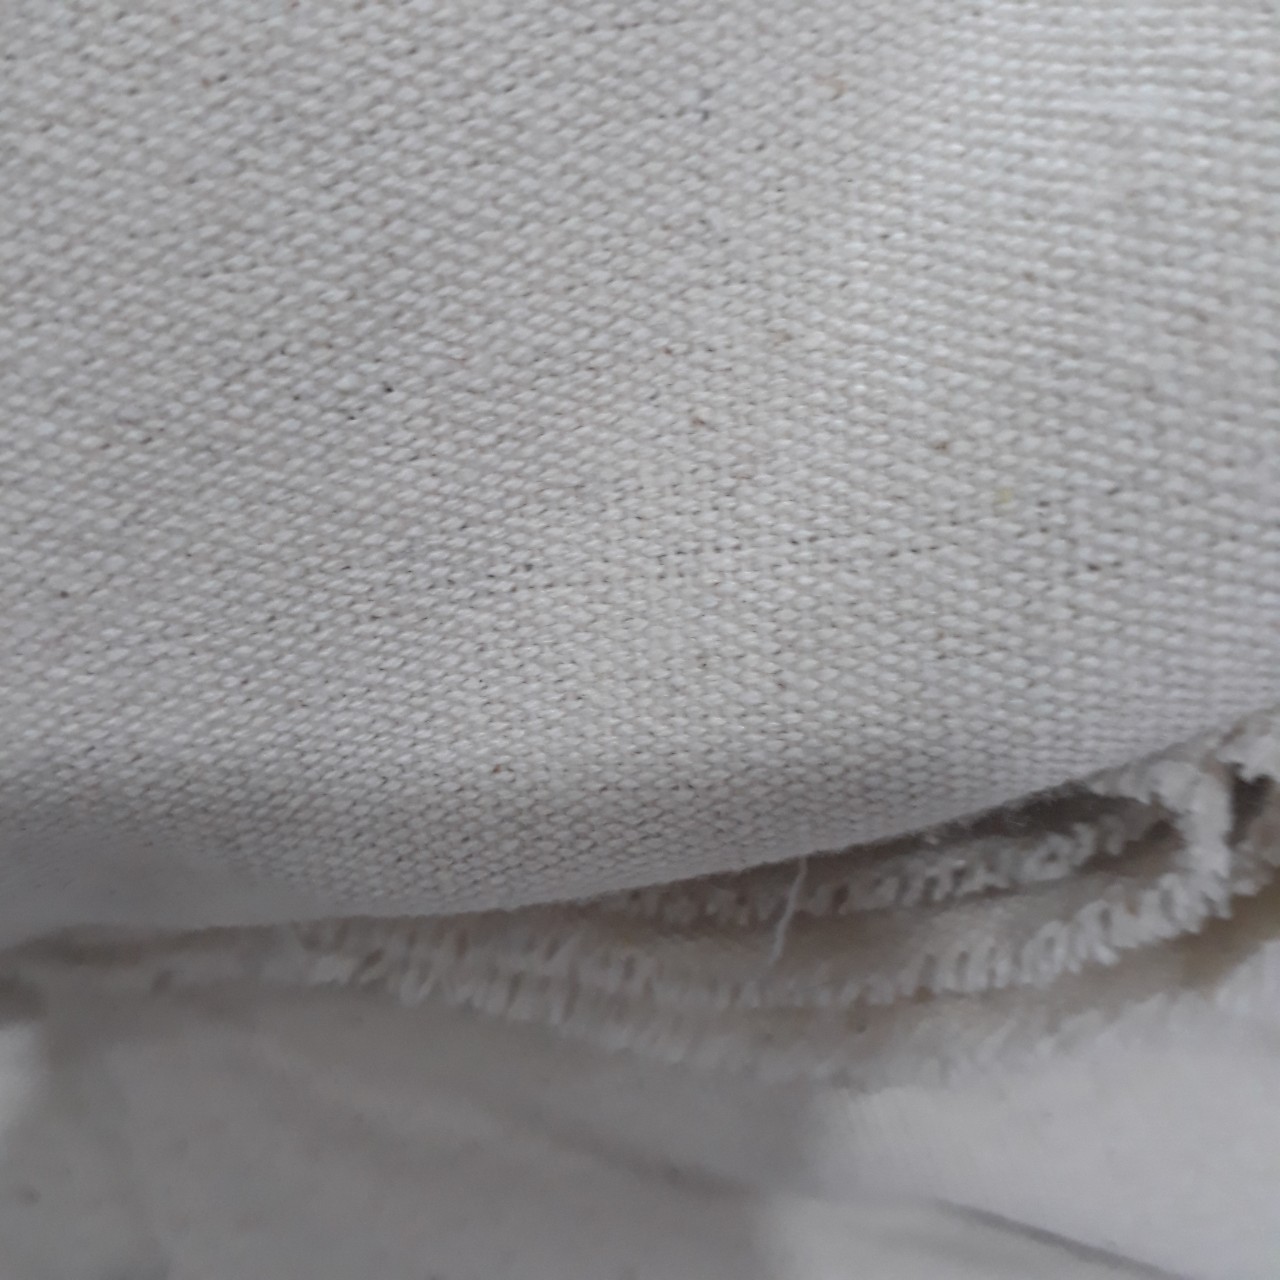 vaicanvasgiare - Phụ kiện thời trang: Vải bố thô màu tự nhiên giá rẻ khi mua số lượng lớn tại STP Vai-bo-tho-stp21